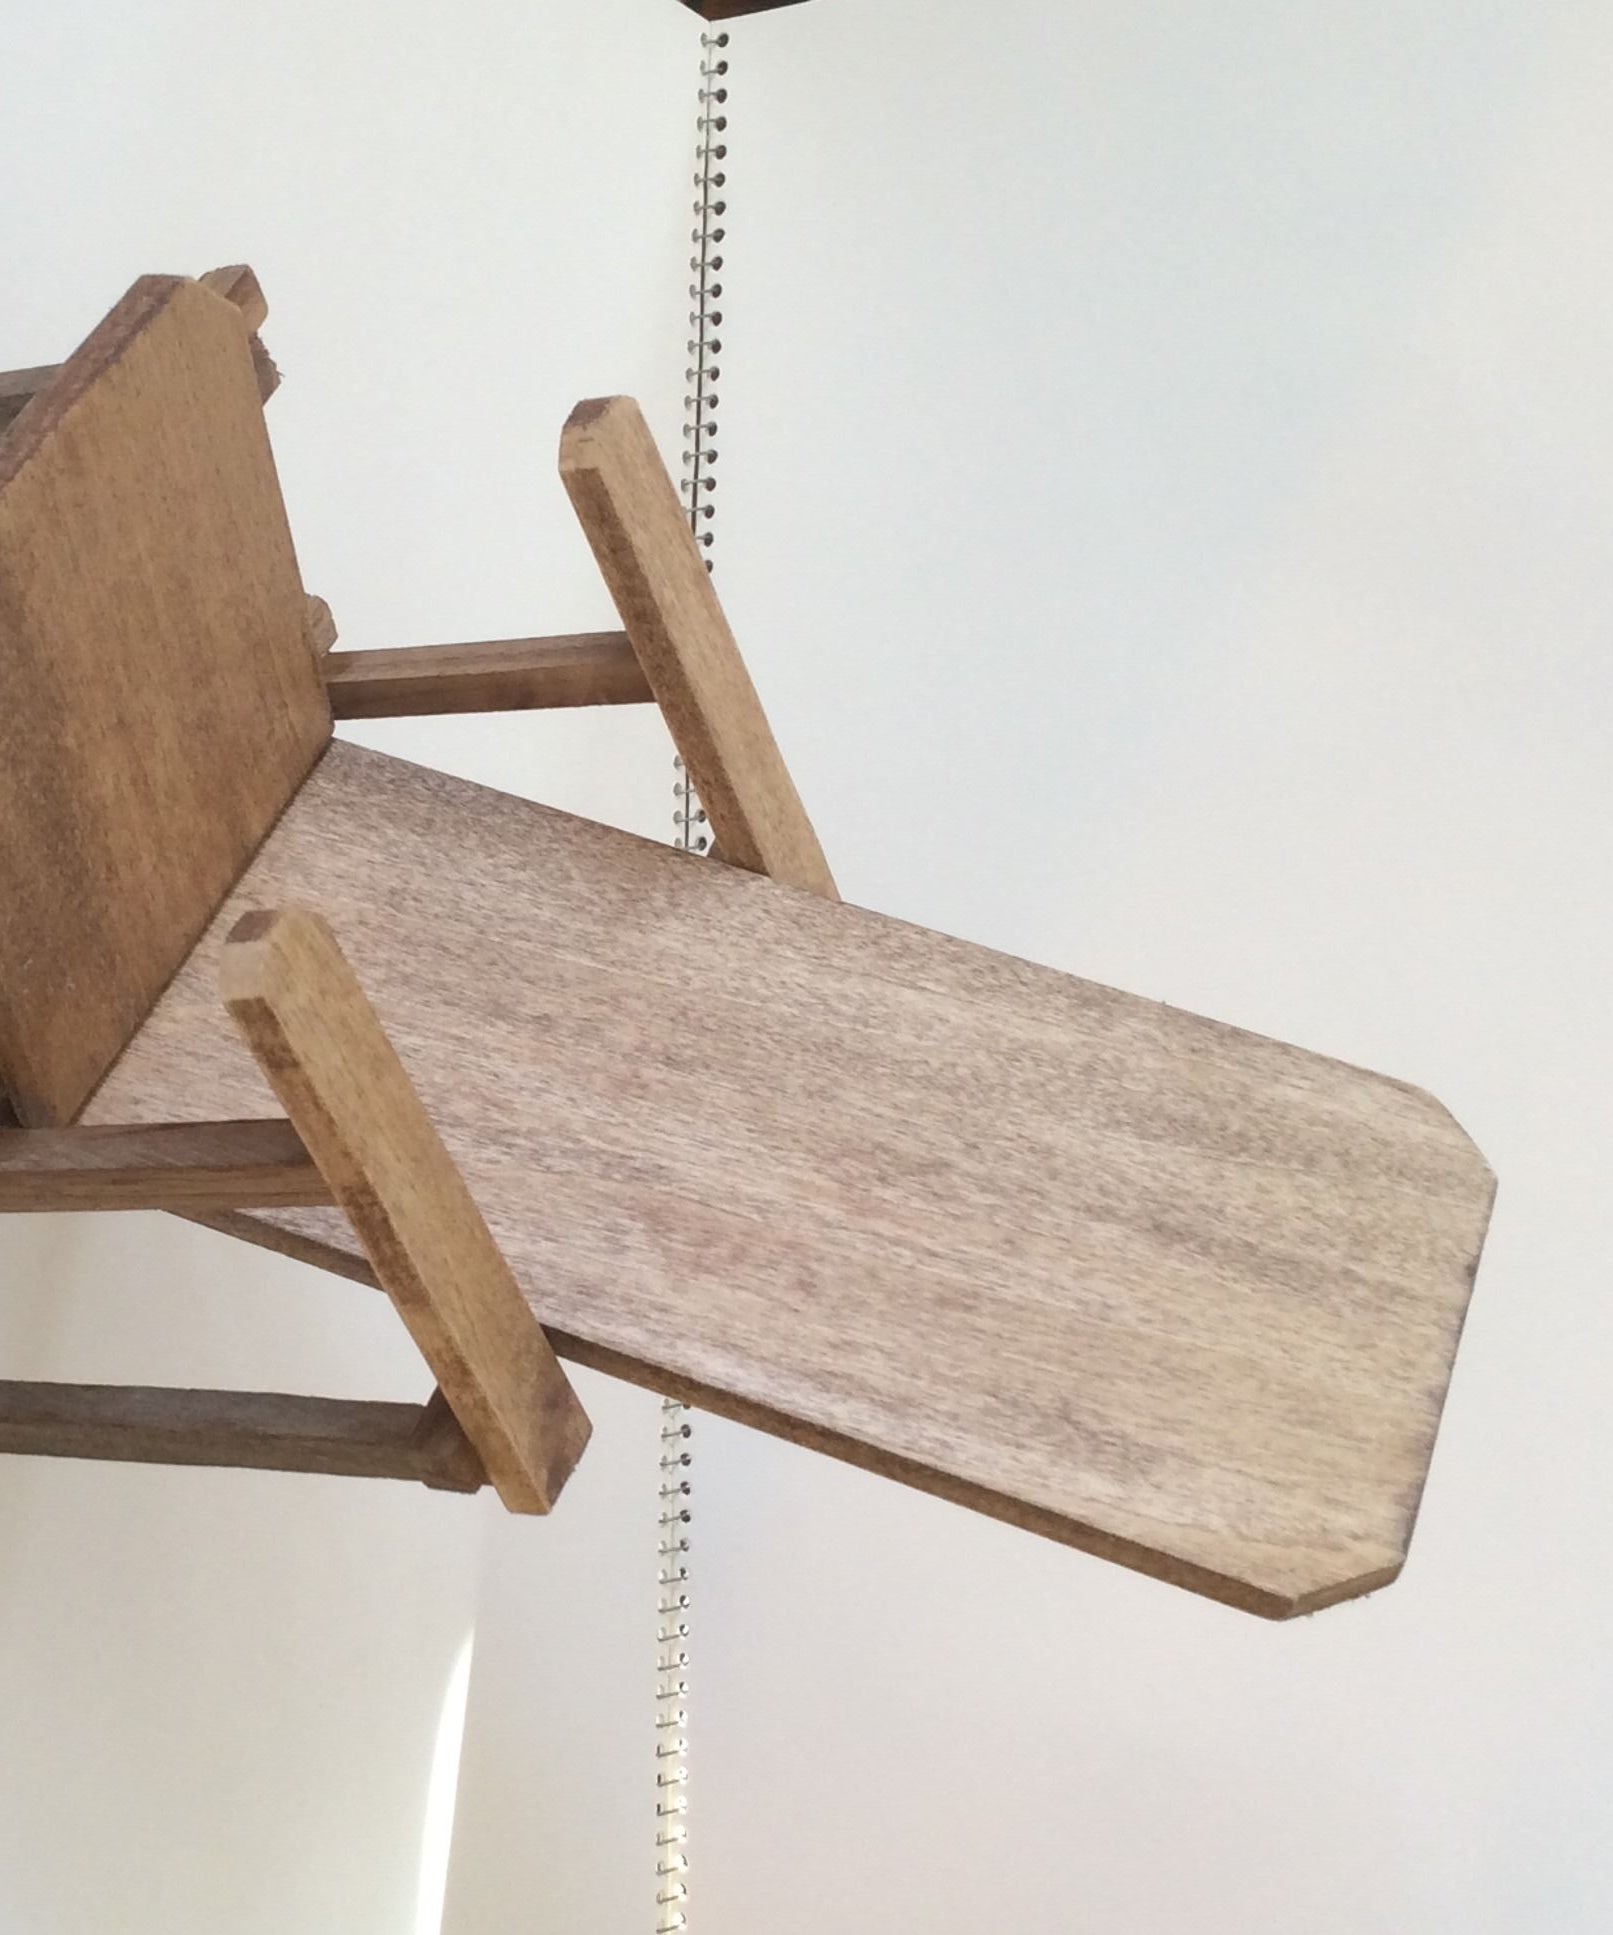 Miniature Wooden Chair